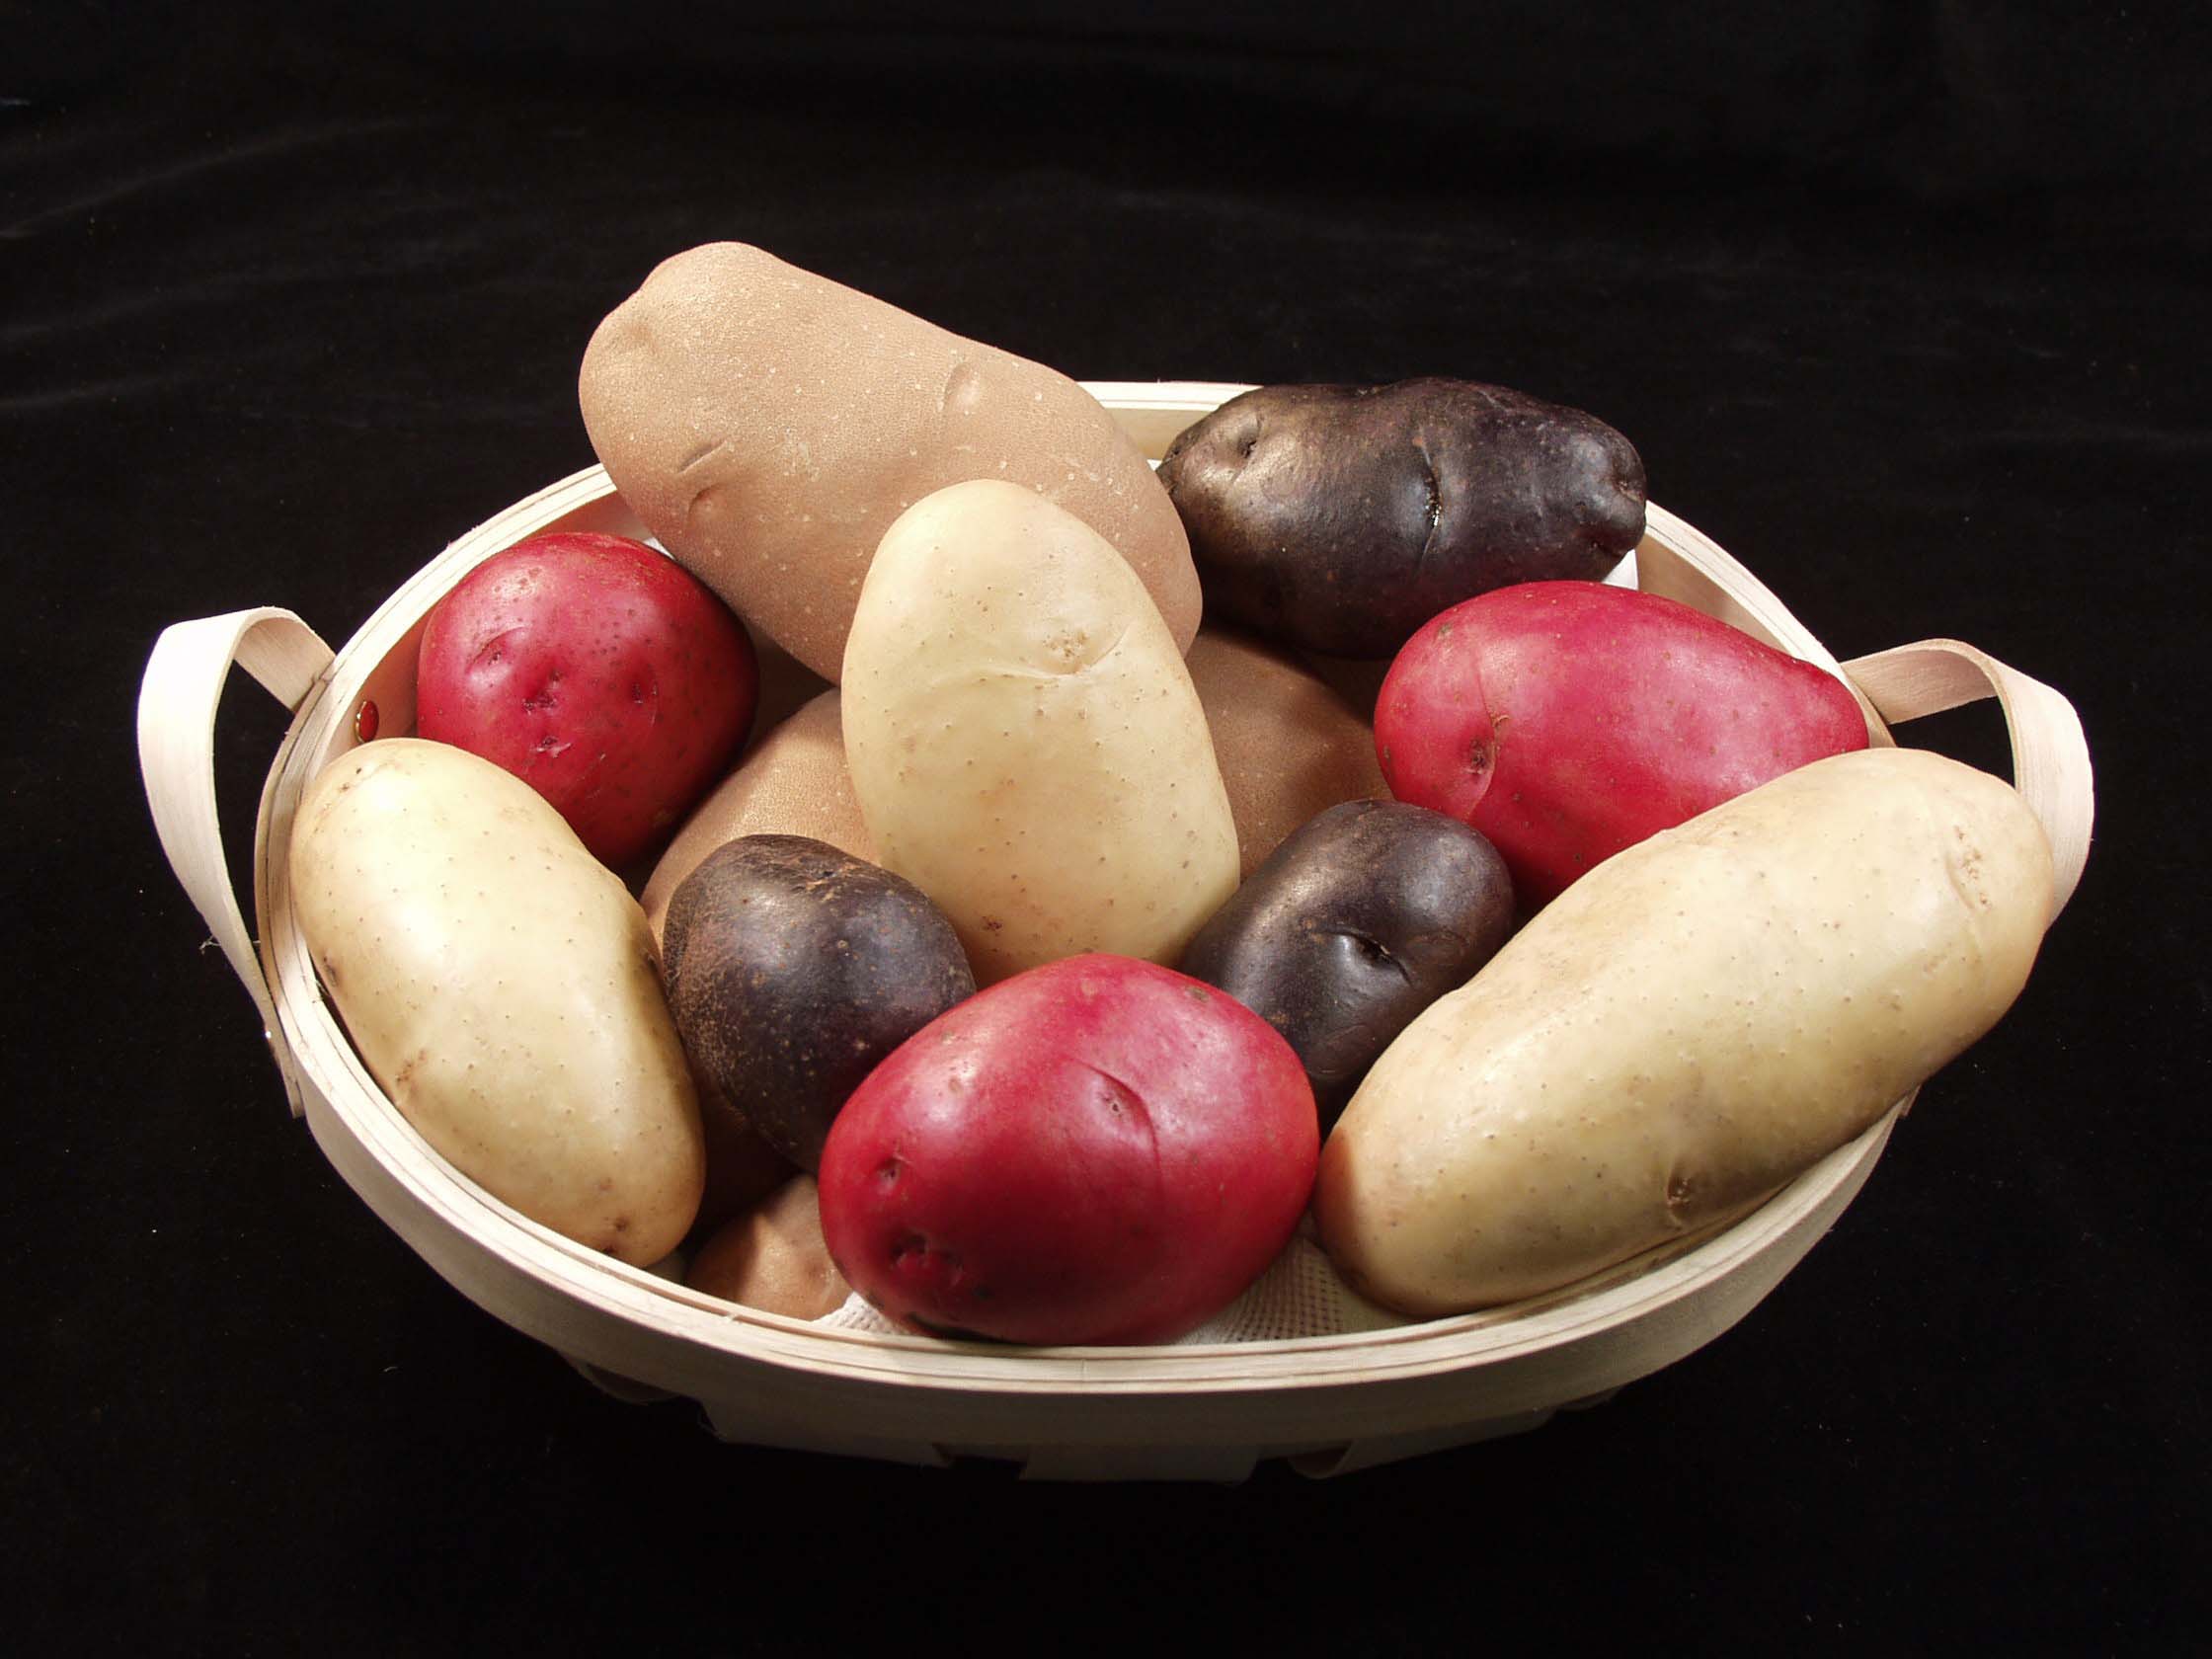 potatobasket.jpg